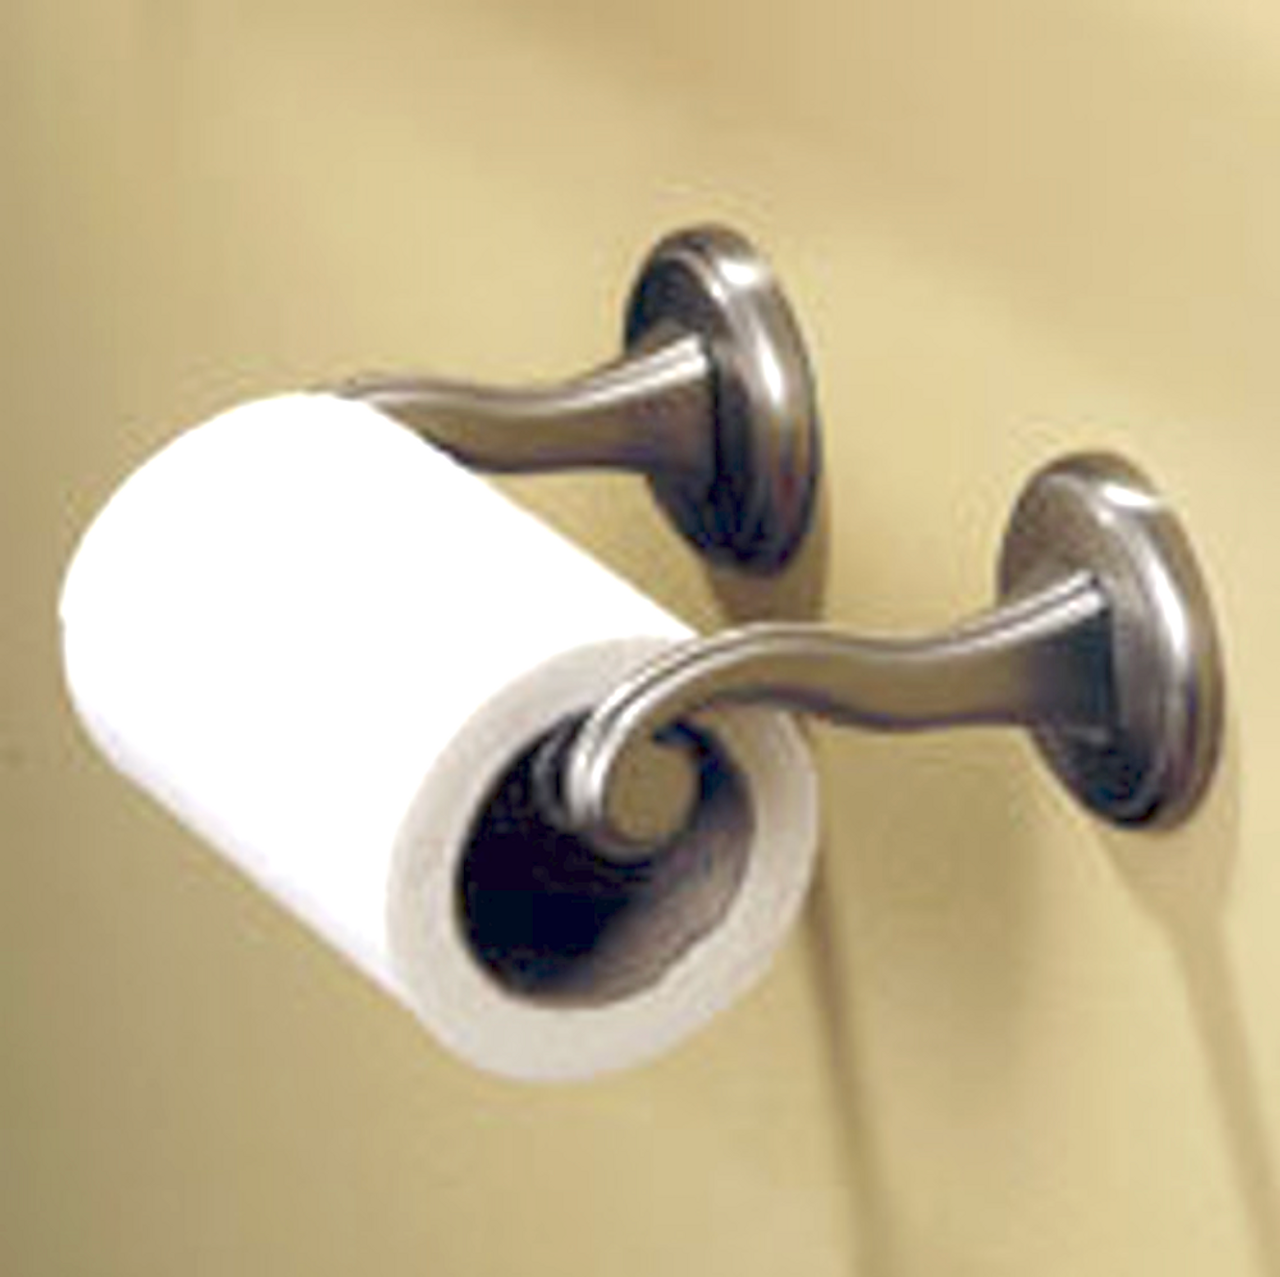 Ginger Designer Bath Circe Double Post Toilet Paper Holder Polished Nickel